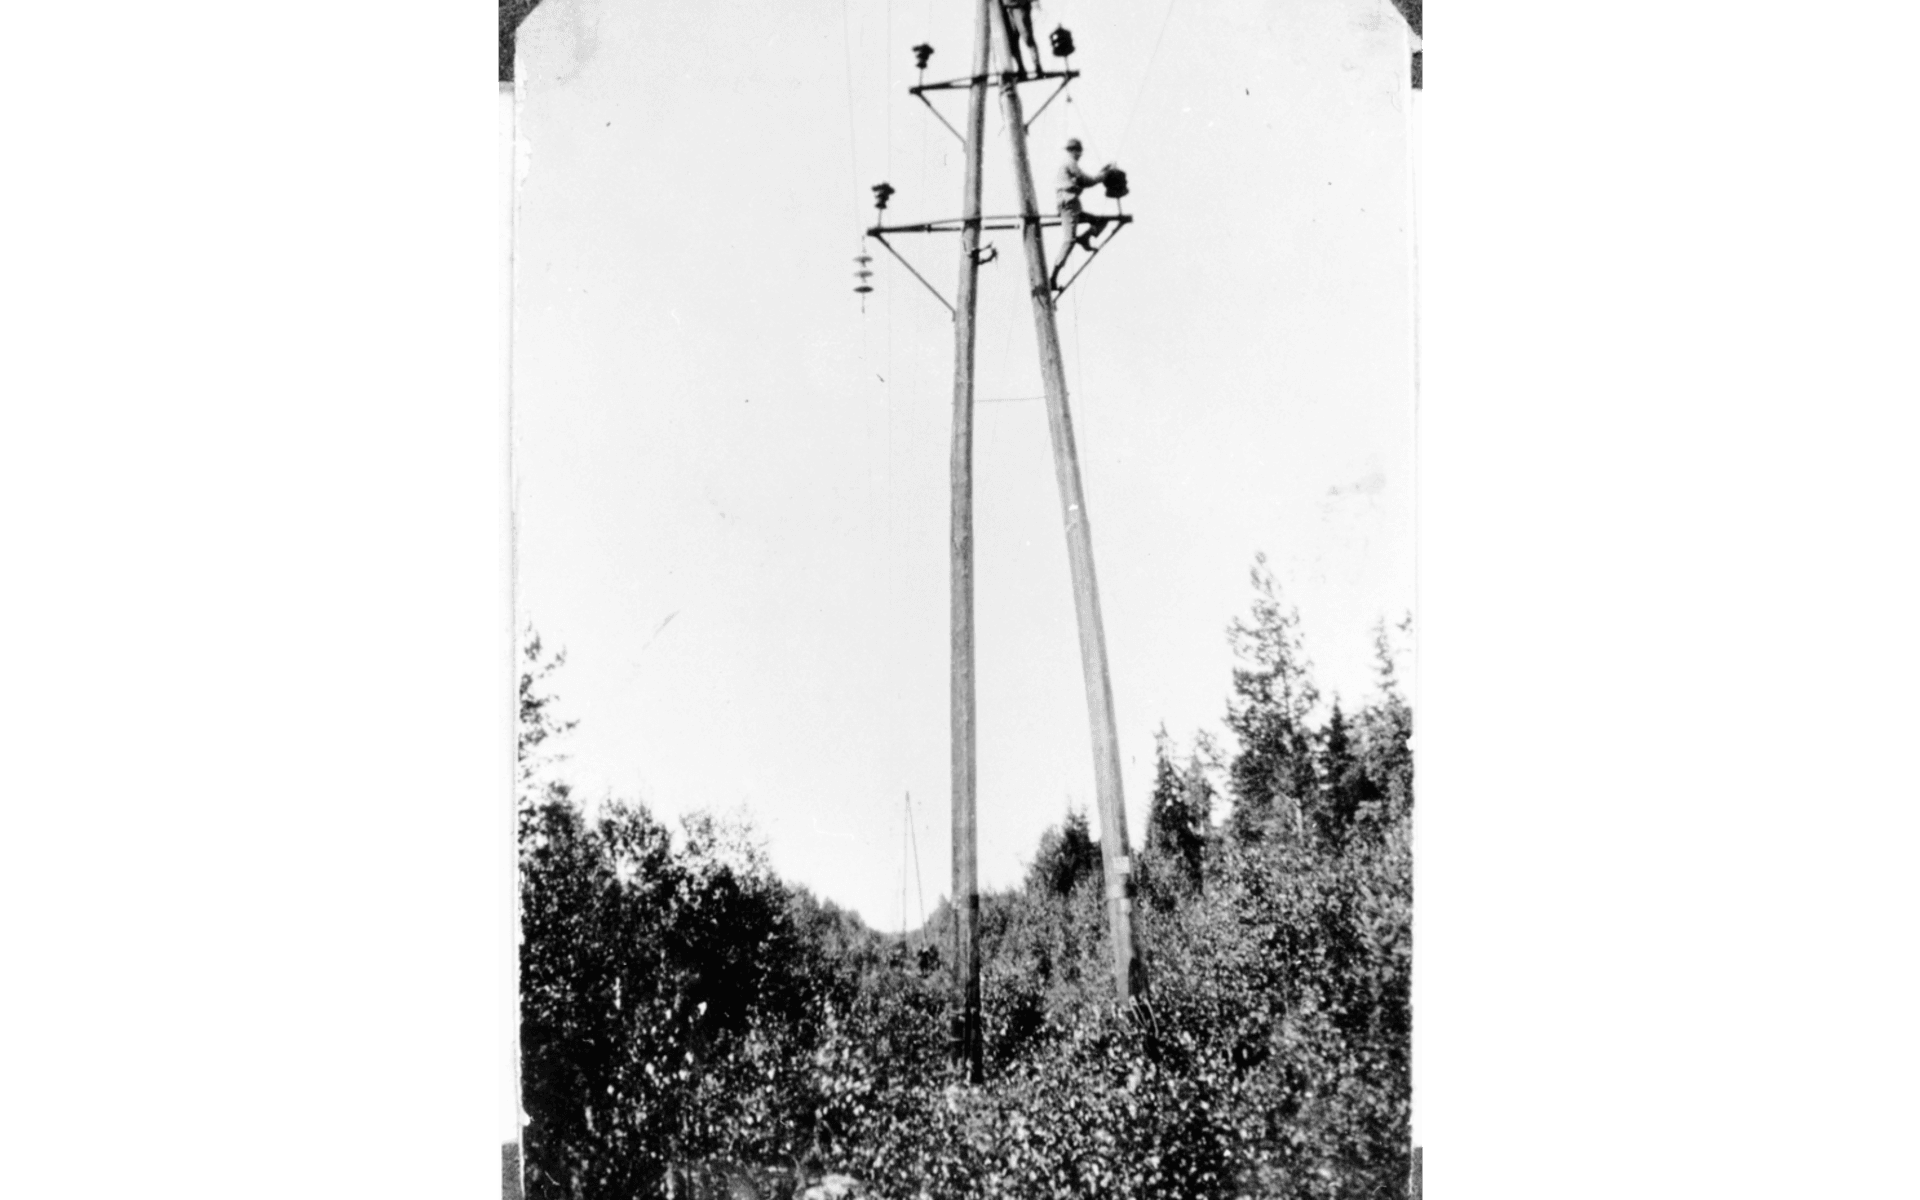 Två telearbetare i en telefonstolpe. Fotografering - 1920-1930.